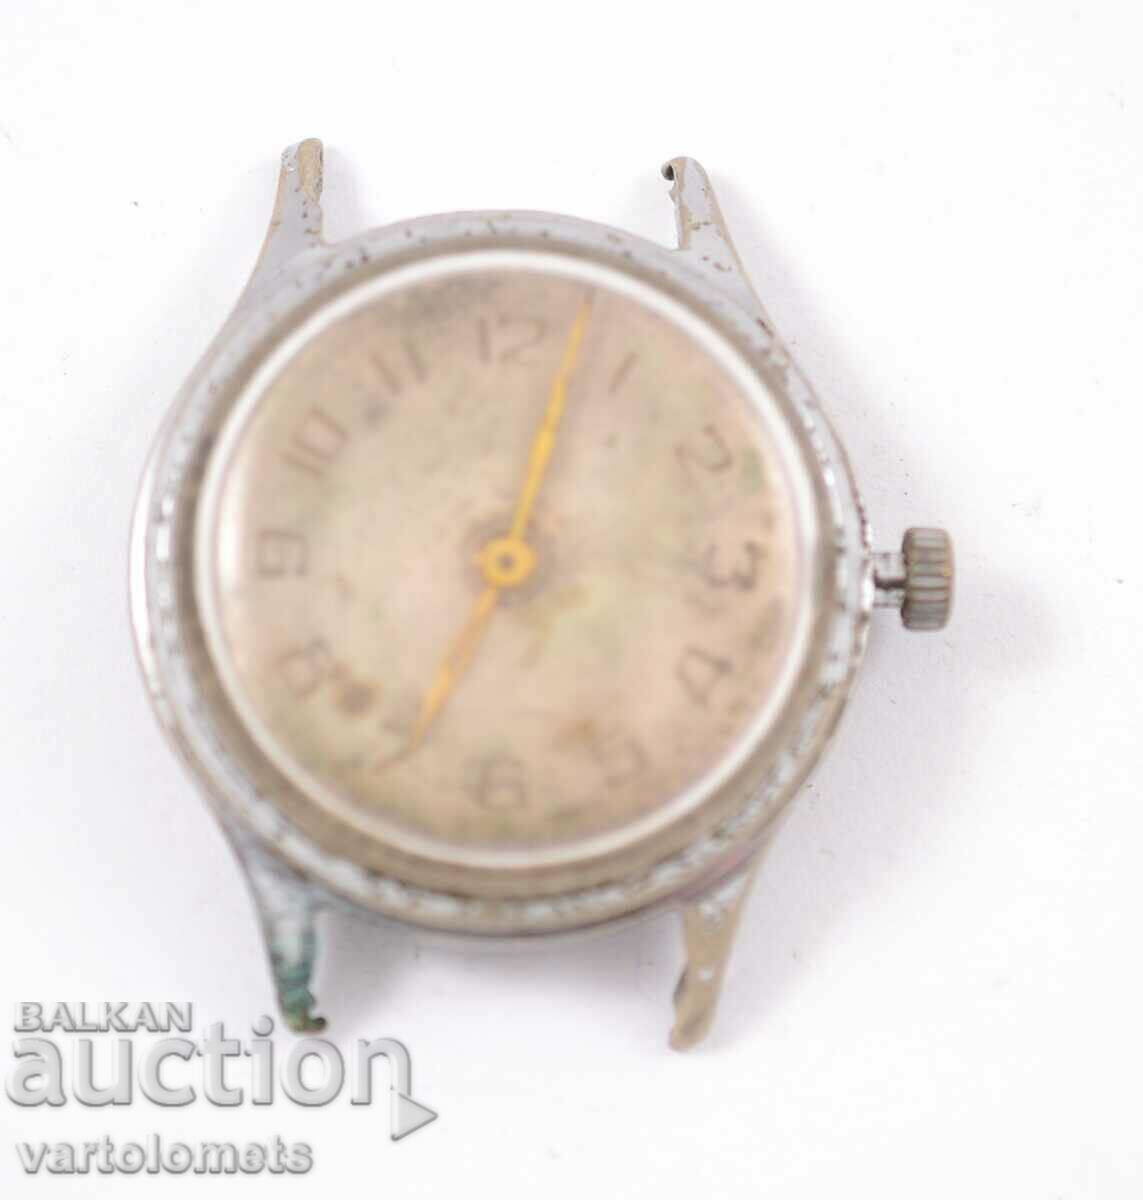 USSR Russian watch - works